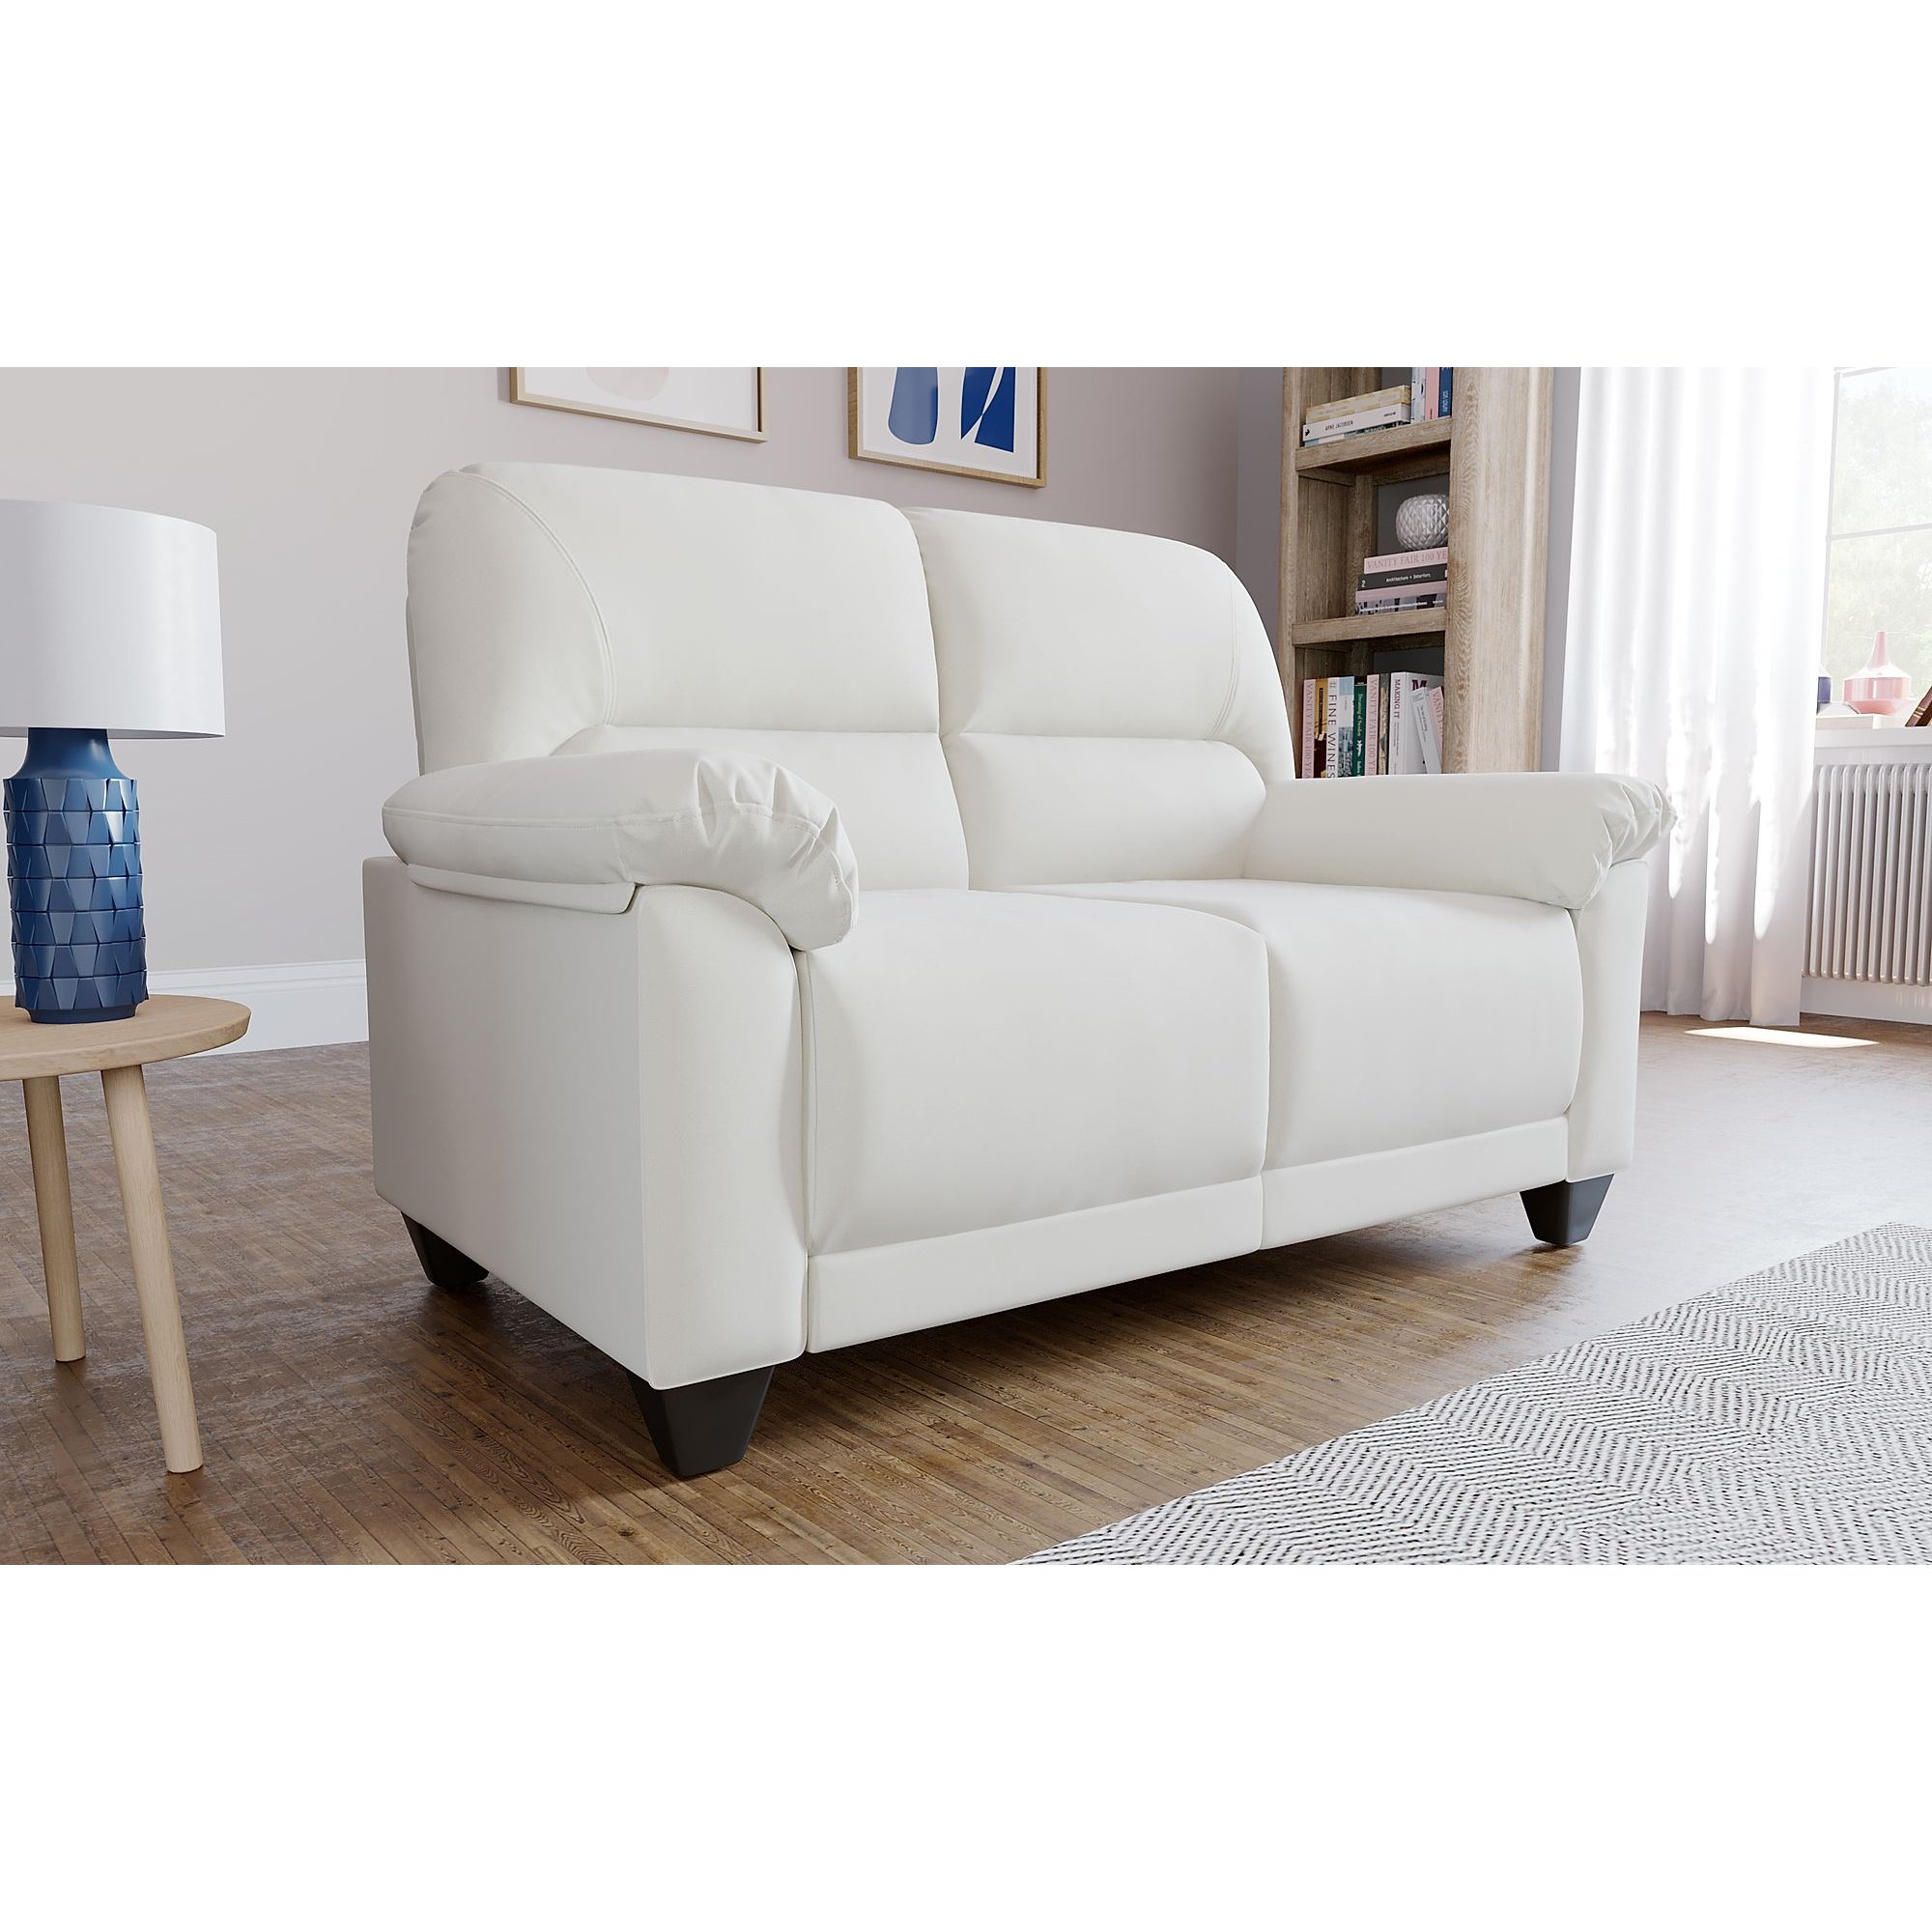 Kenton Small Ivory 2 Seater Sofa